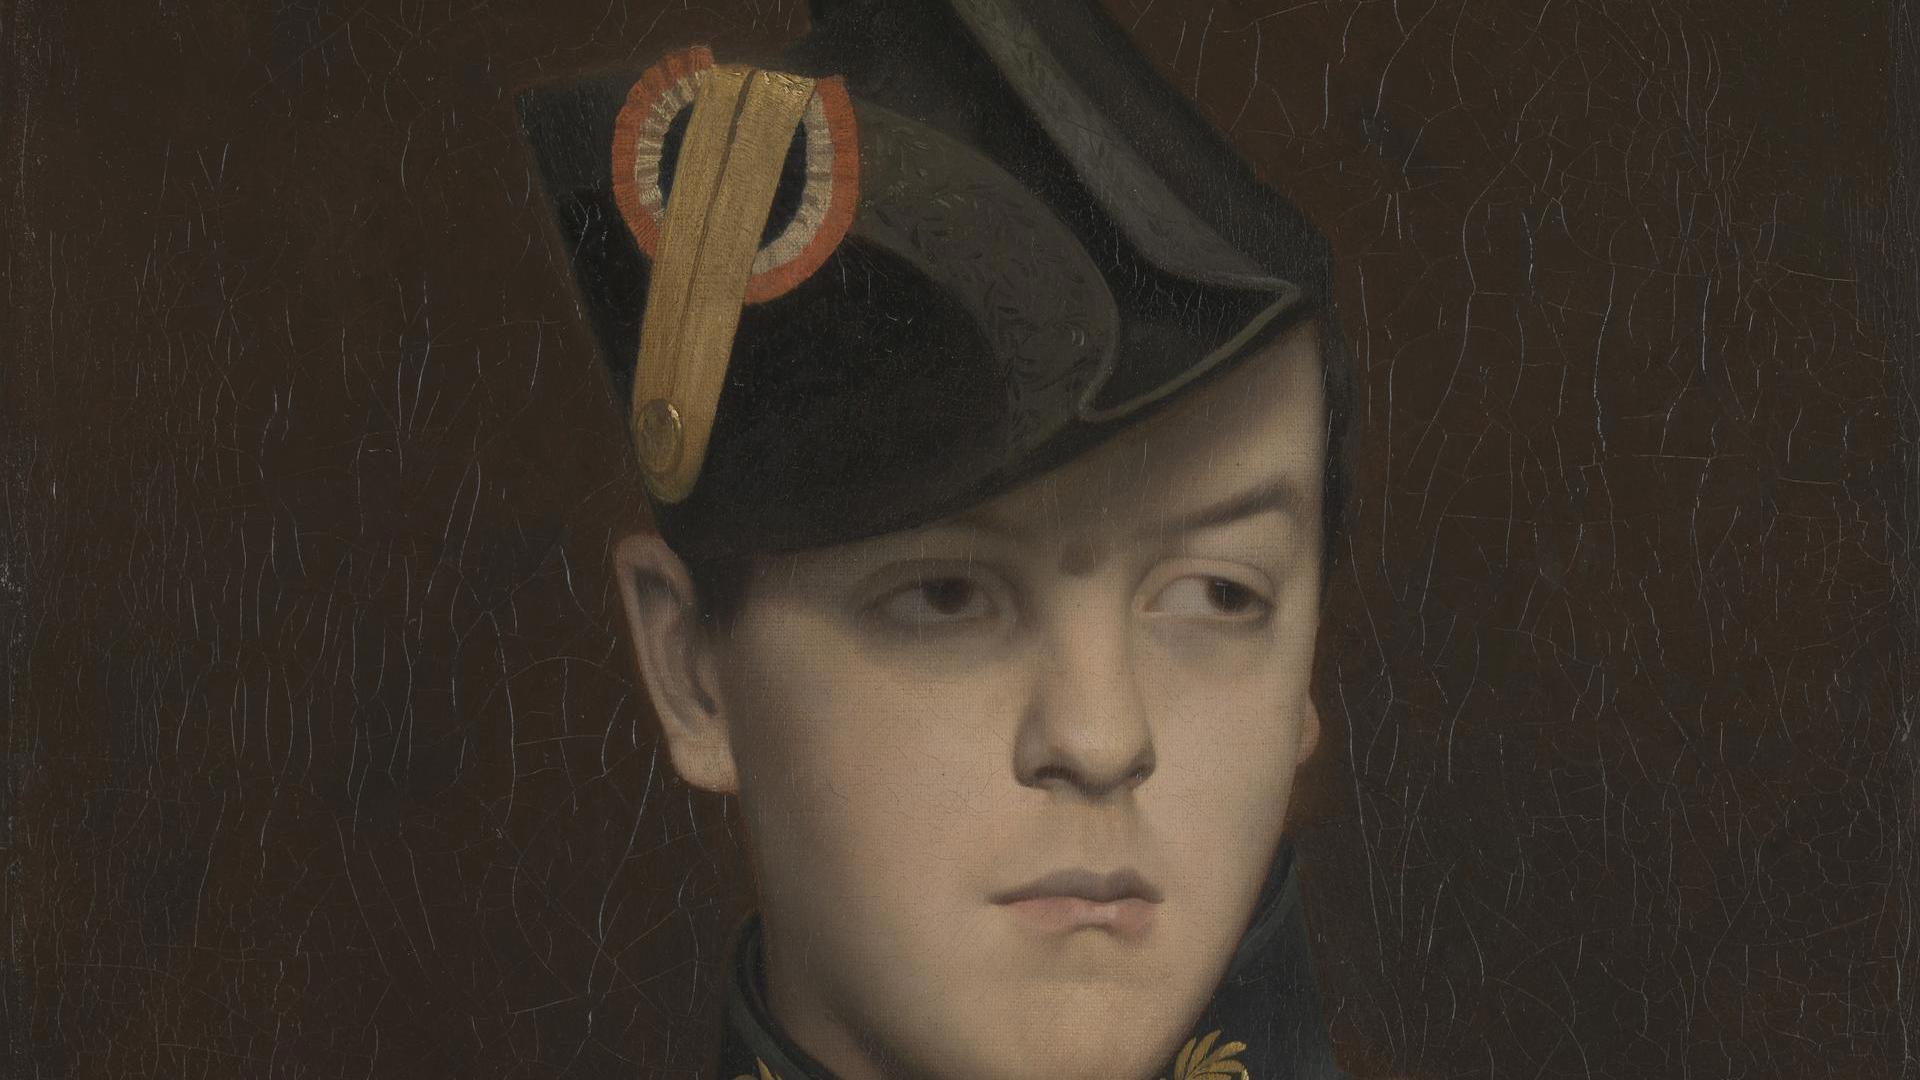 Portrait of Armand Gérôme by Jean-Léon Gérôme